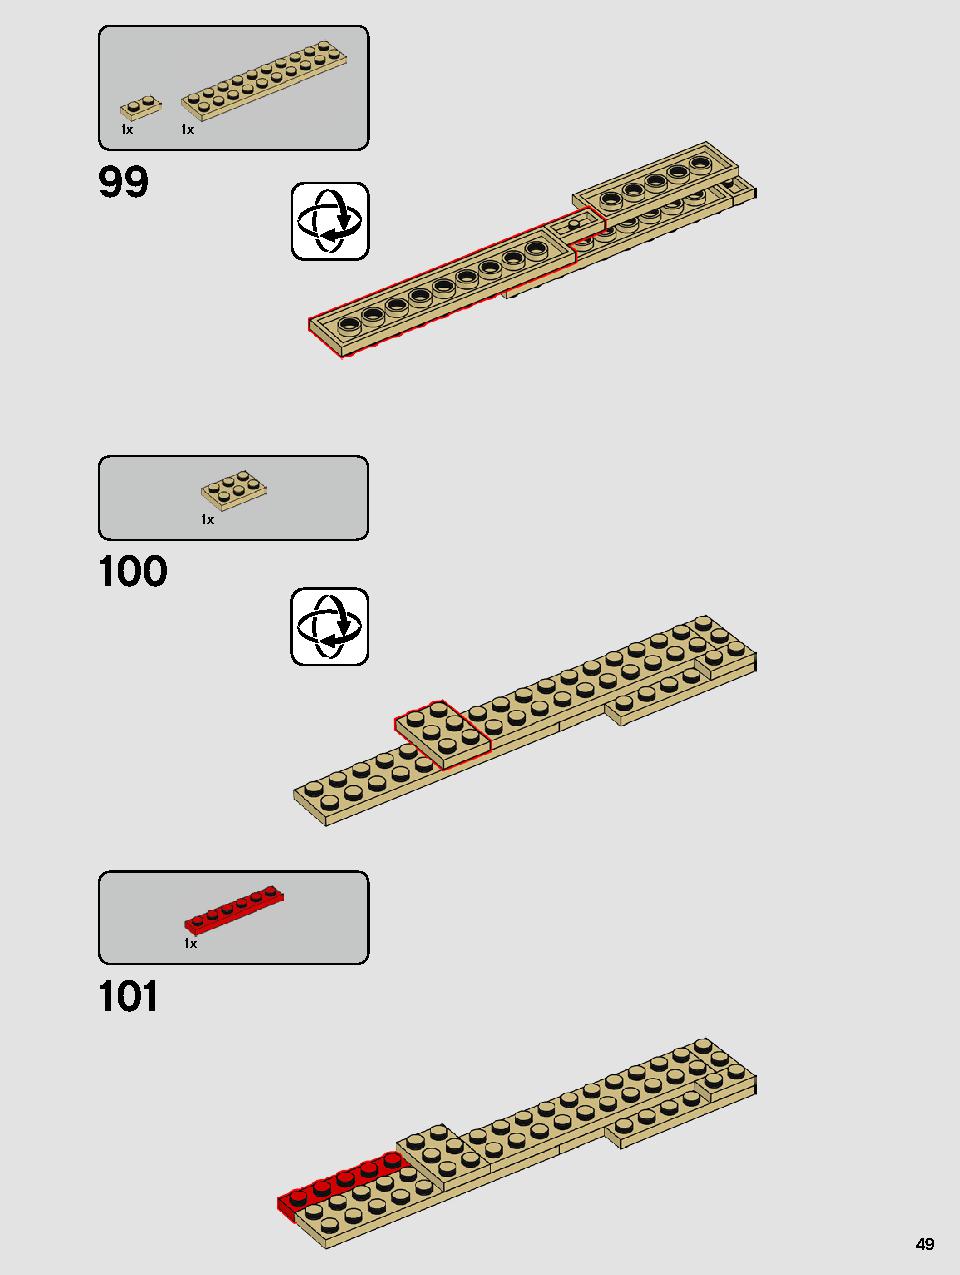 ヨーダ™ 75255 レゴの商品情報 レゴの説明書・組立方法 49 page